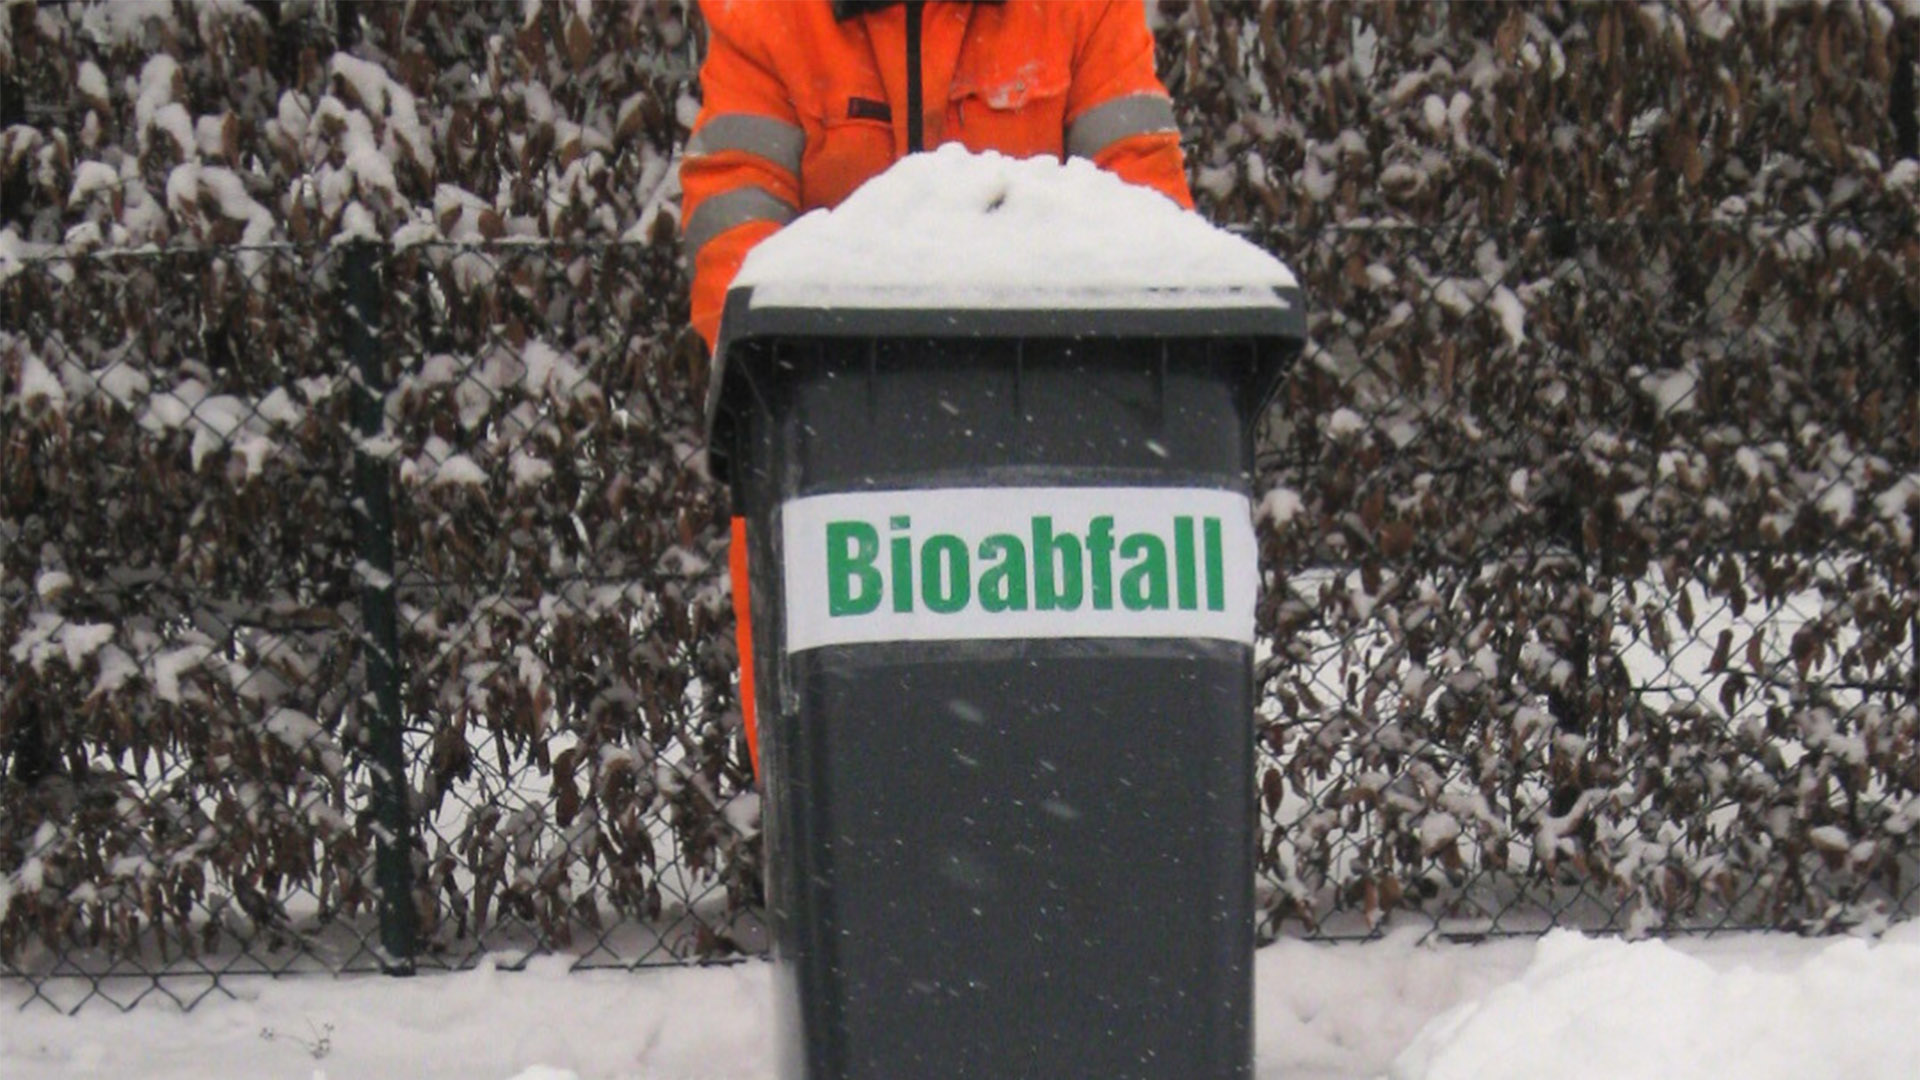 Ein Mann in oranger Arbeitskleidung zieht eine schneebedeckte Bioabfalltonne durch Schnee